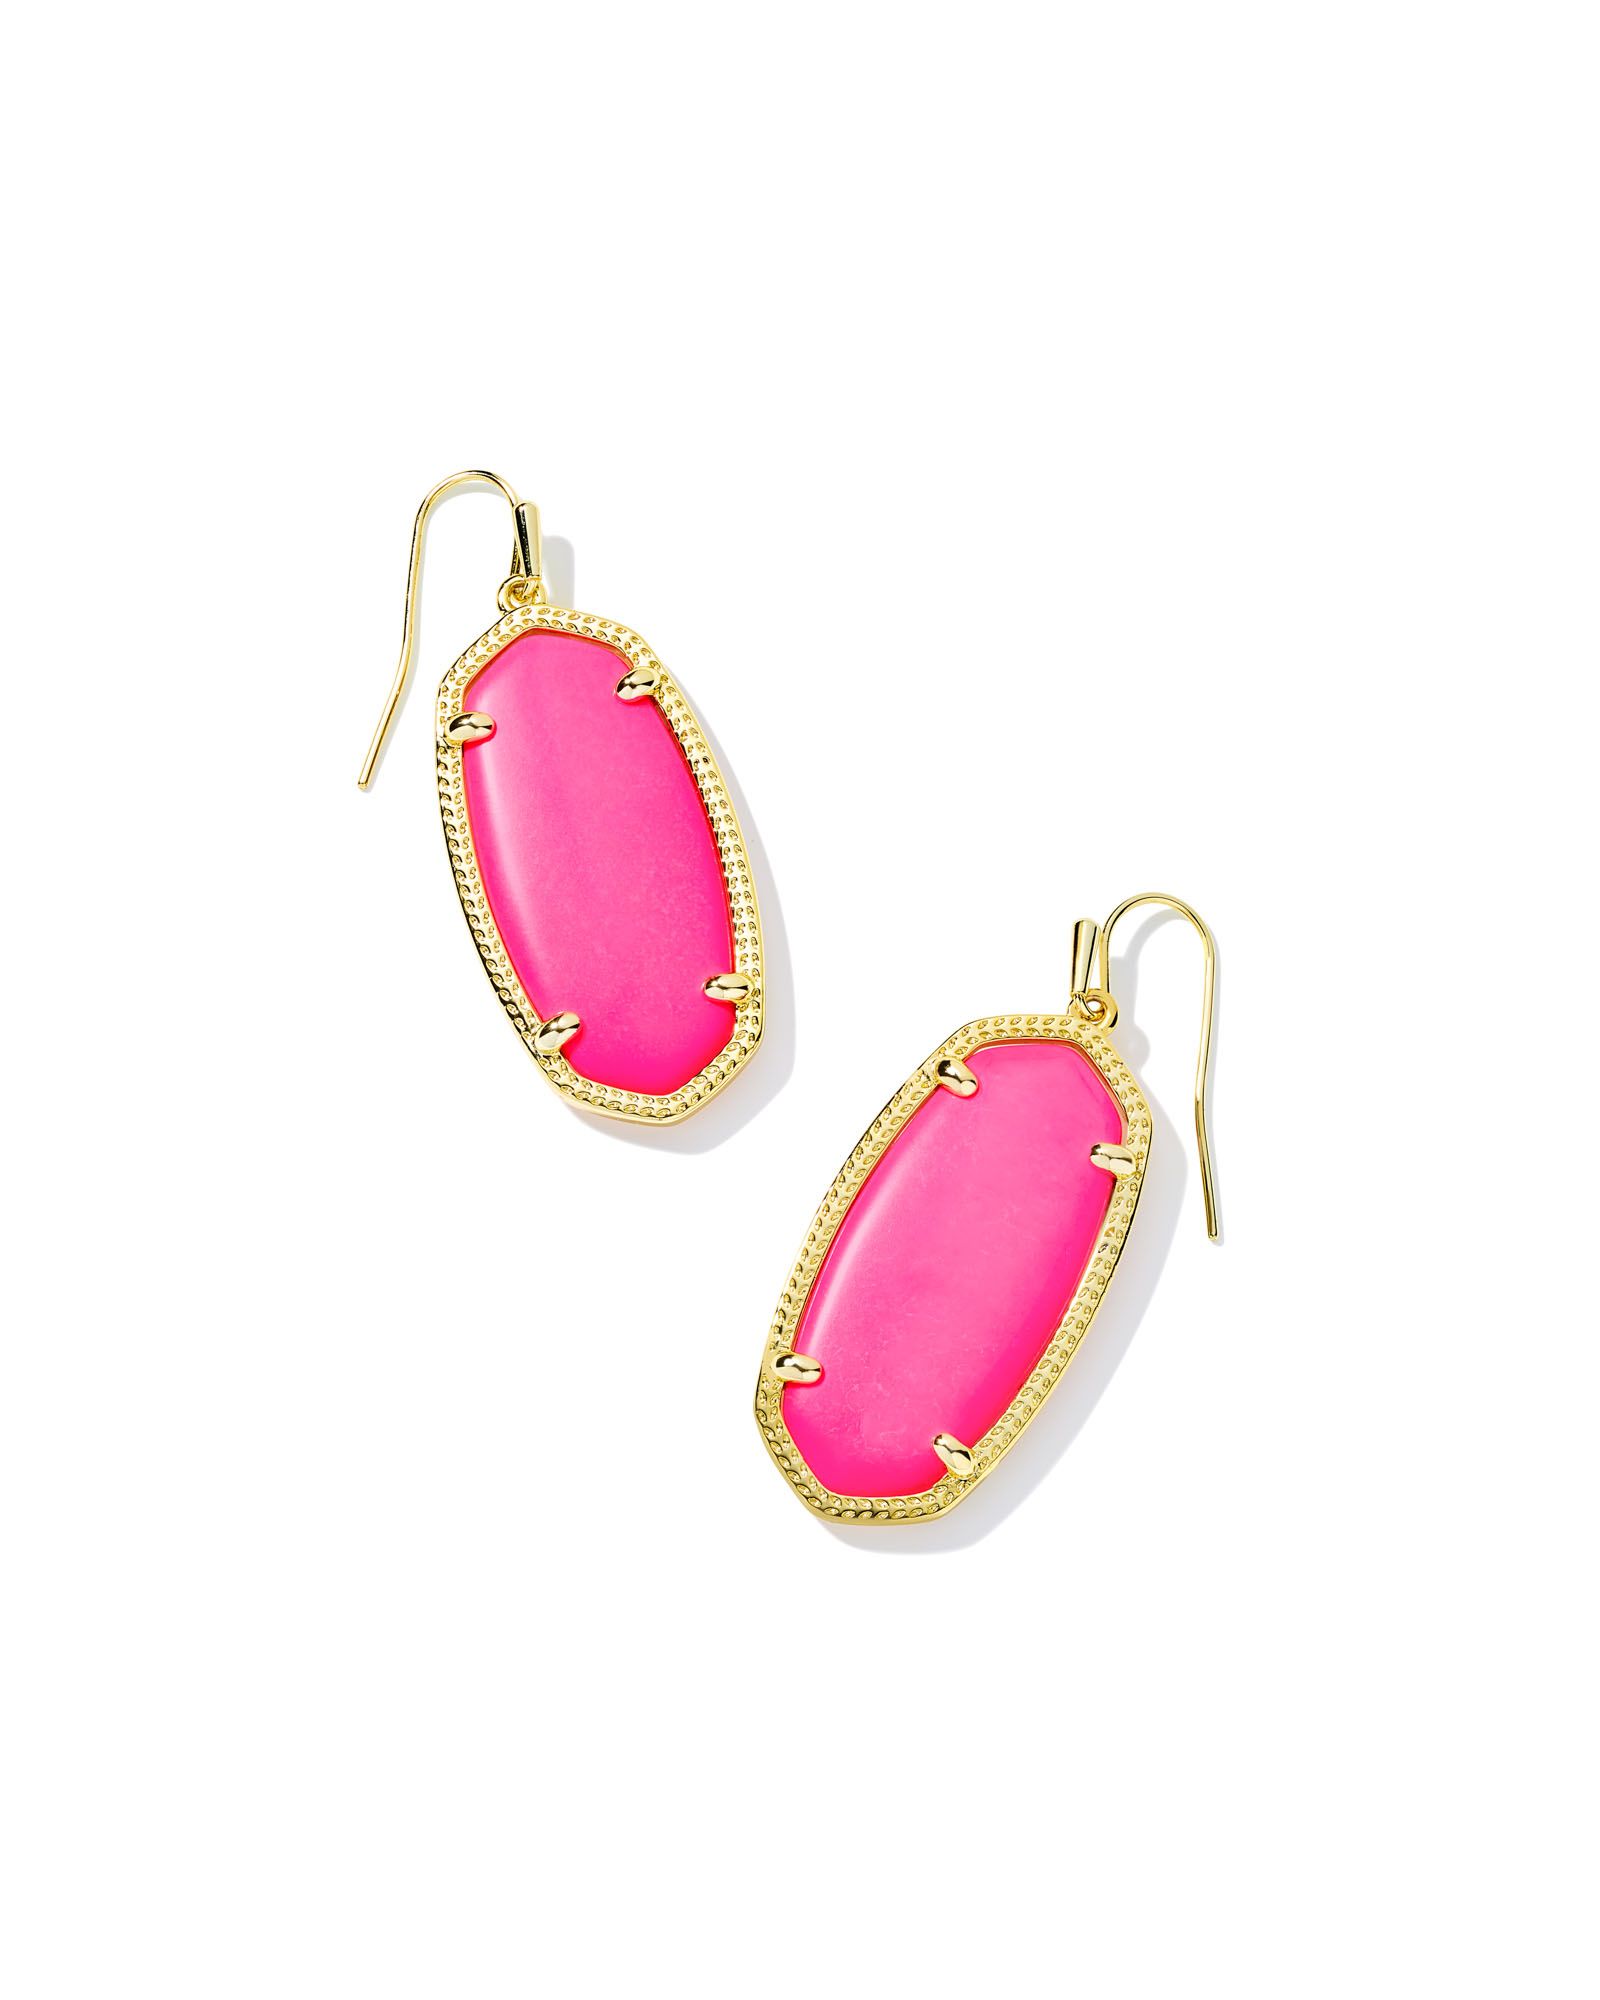 Elle Gold Drop Earrings in Neon Pink Magnesite | Kendra Scott